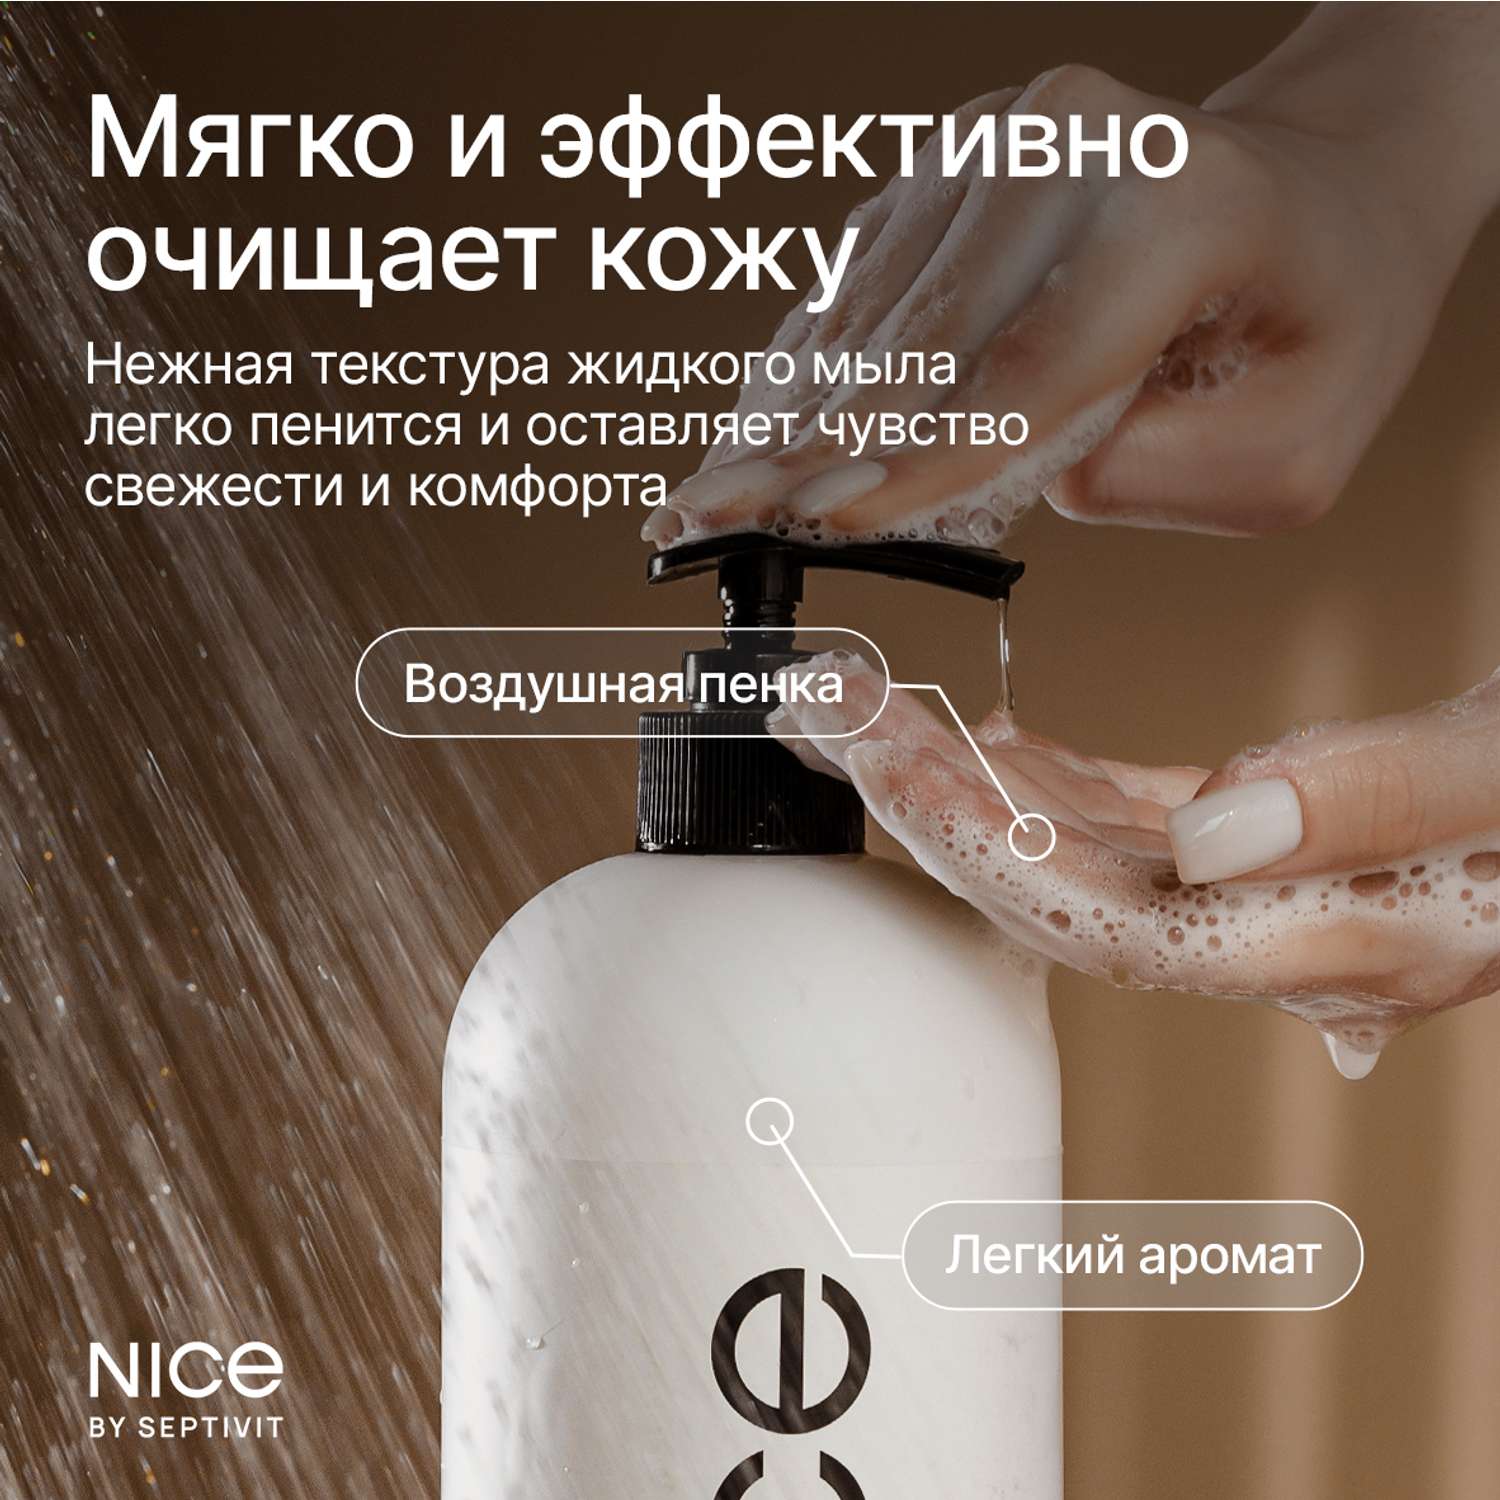 Жидкое мыло для рук NICE by Septivit с ароматом Авокадо-манго 5л - фото 4